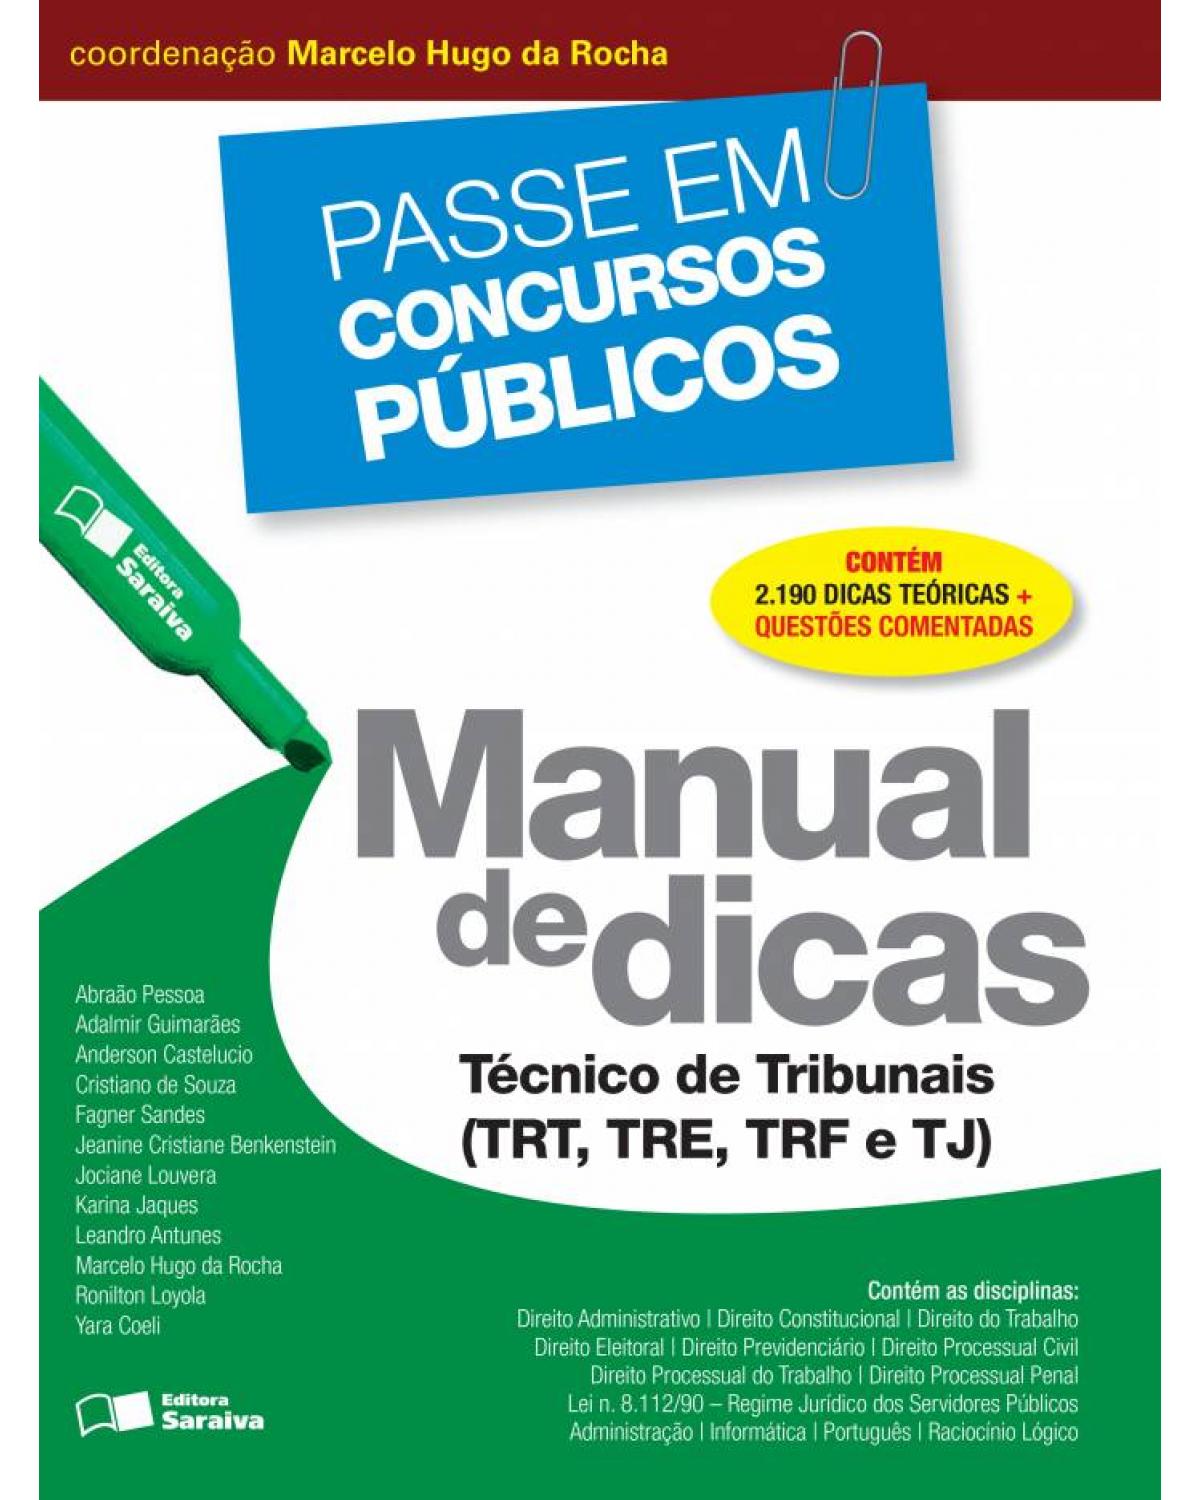 Manual de dicas - técnico de tribunais (TRT, TRE, TRF e TJ) - 1ª Edição | 2017